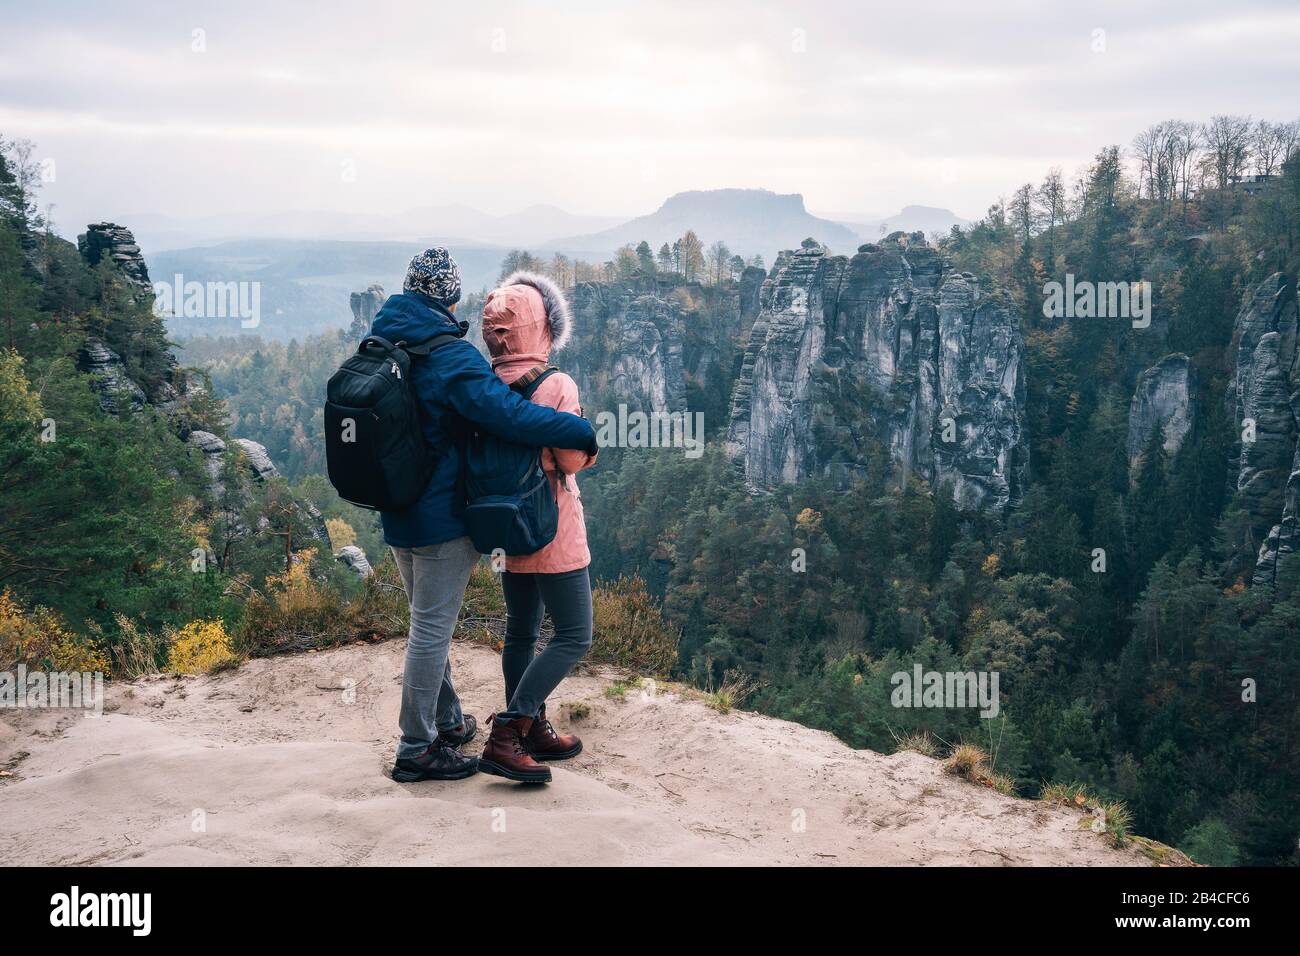 Junges Paar in winterlicher Kleidung mit Rucksäcken, die nach Wanderung auf einem Kalksteinfelsen stehend die Ansicht der Landschaft genießt, Reise-Li Stock Photo